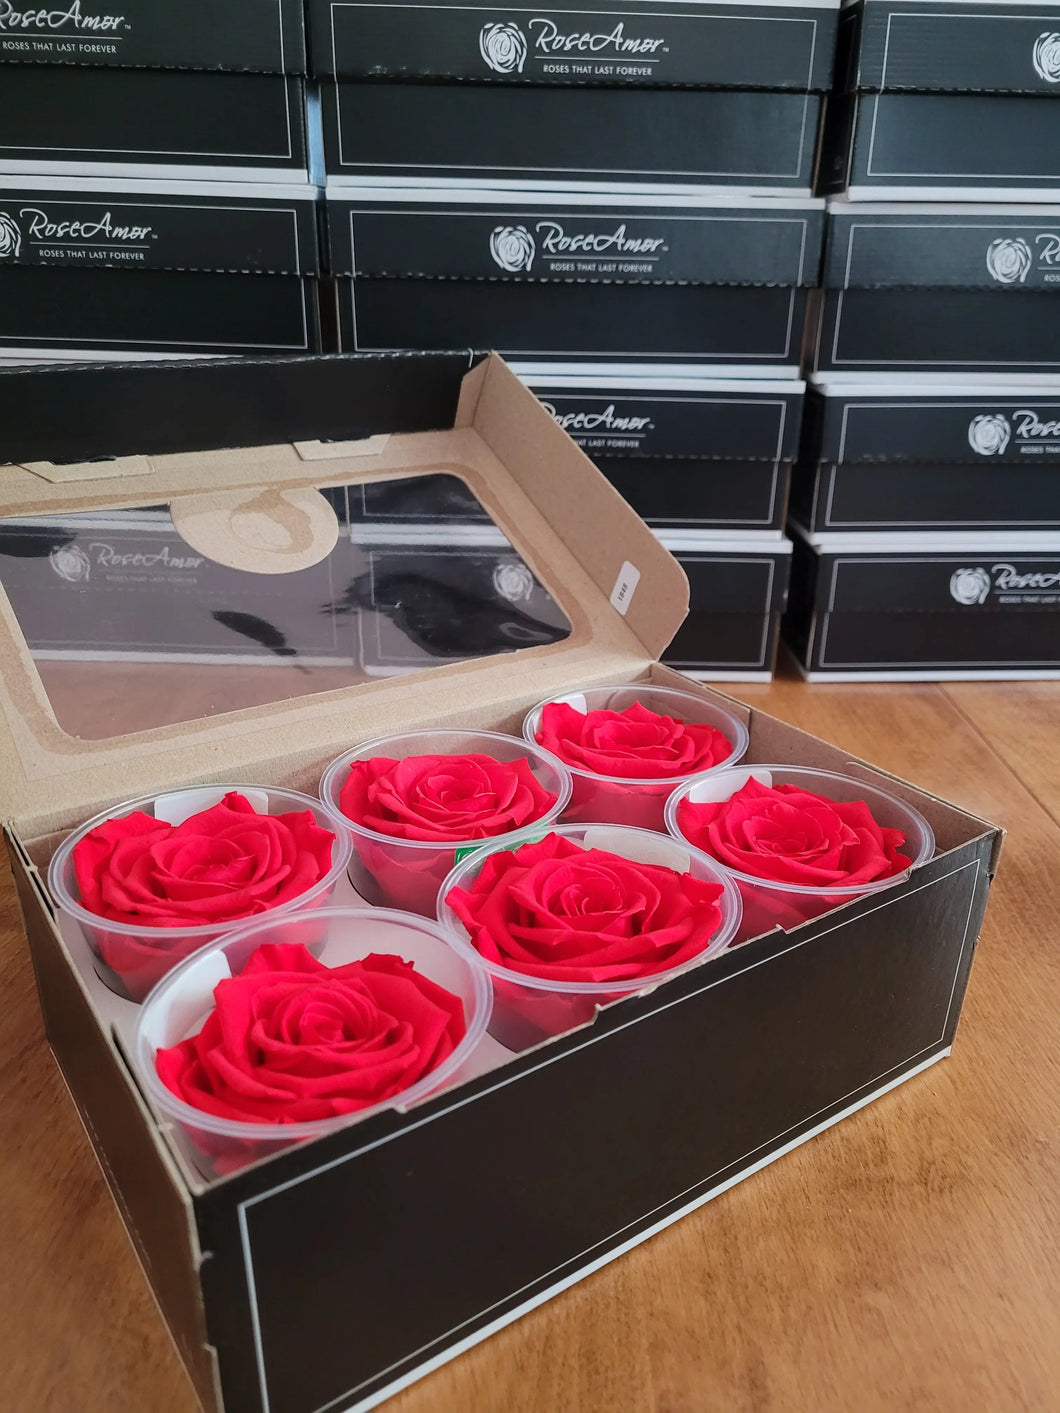 noscript-image-Large Preserved Rose Six Packs in Orange Red